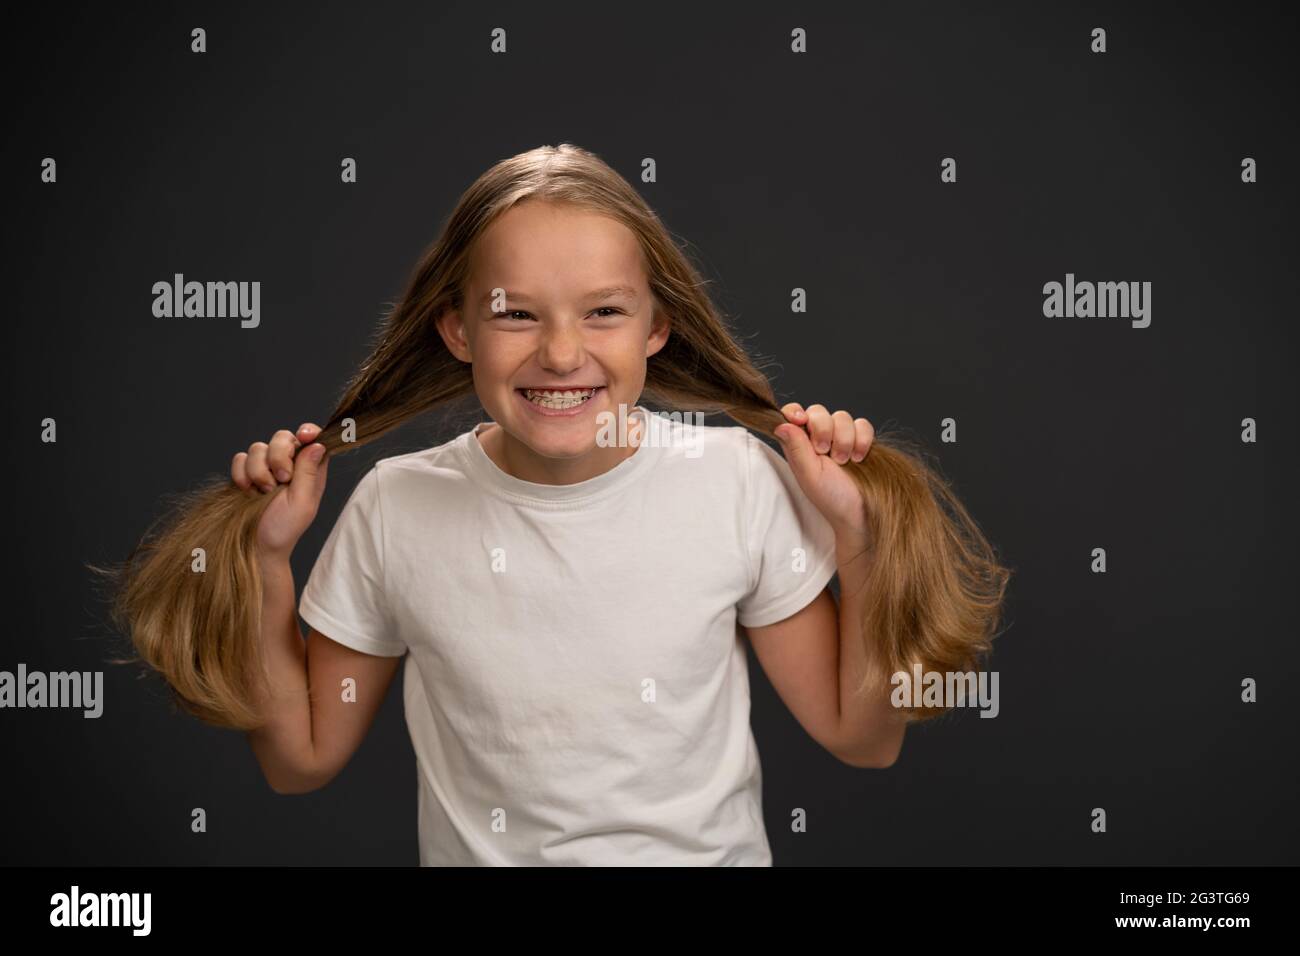 Glücklich lächelnd und mit zwei Pony-Schwänzen 8,10 Jahre altes Mädchen, das ihre Haare in einem weißen T-Shirt hält und ein wenig grinsend lächelt Stockfoto